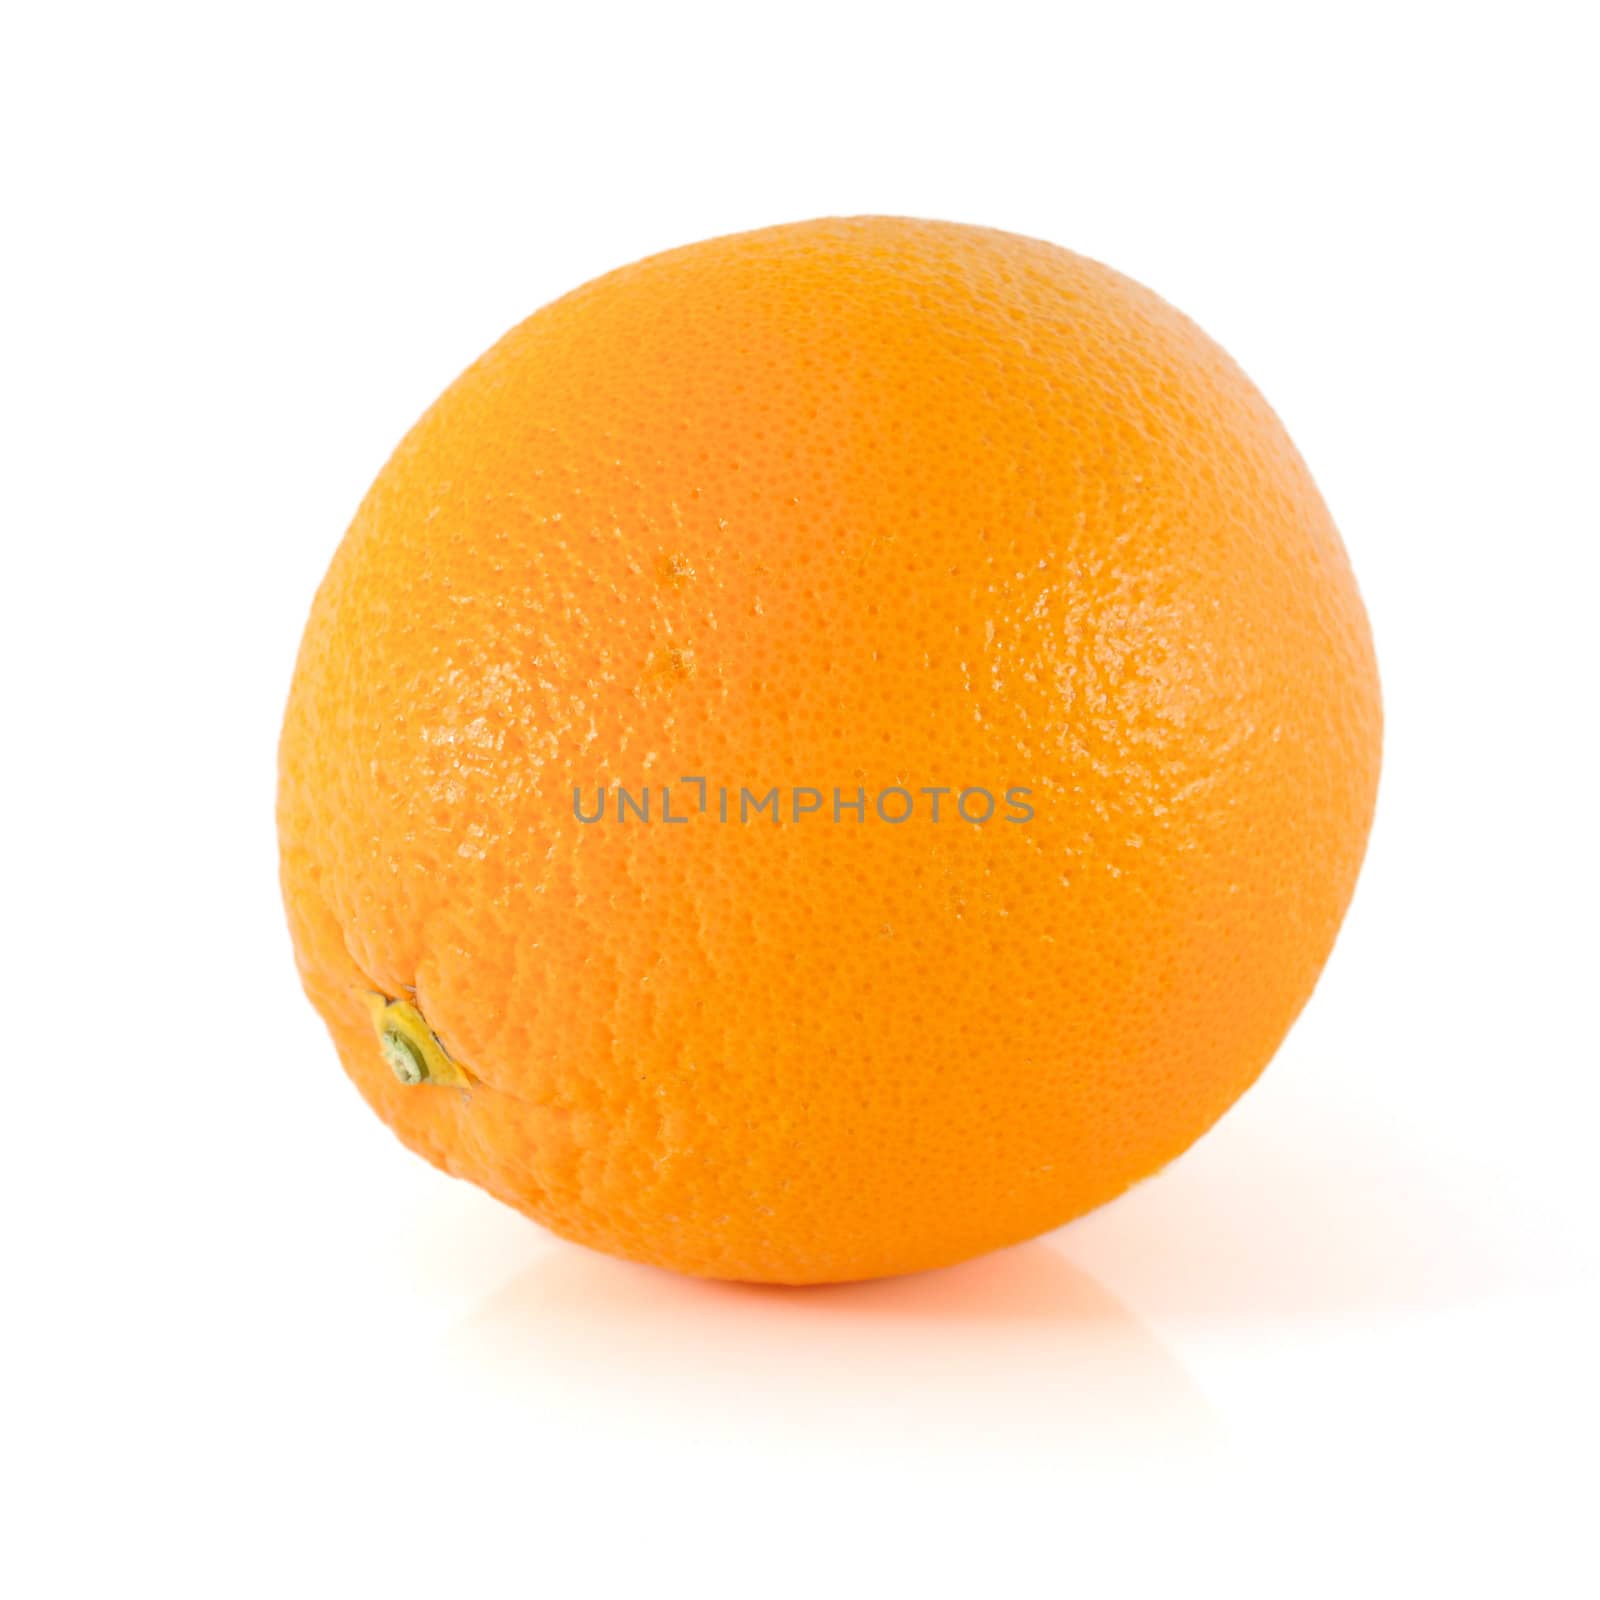 Orange by antpkr